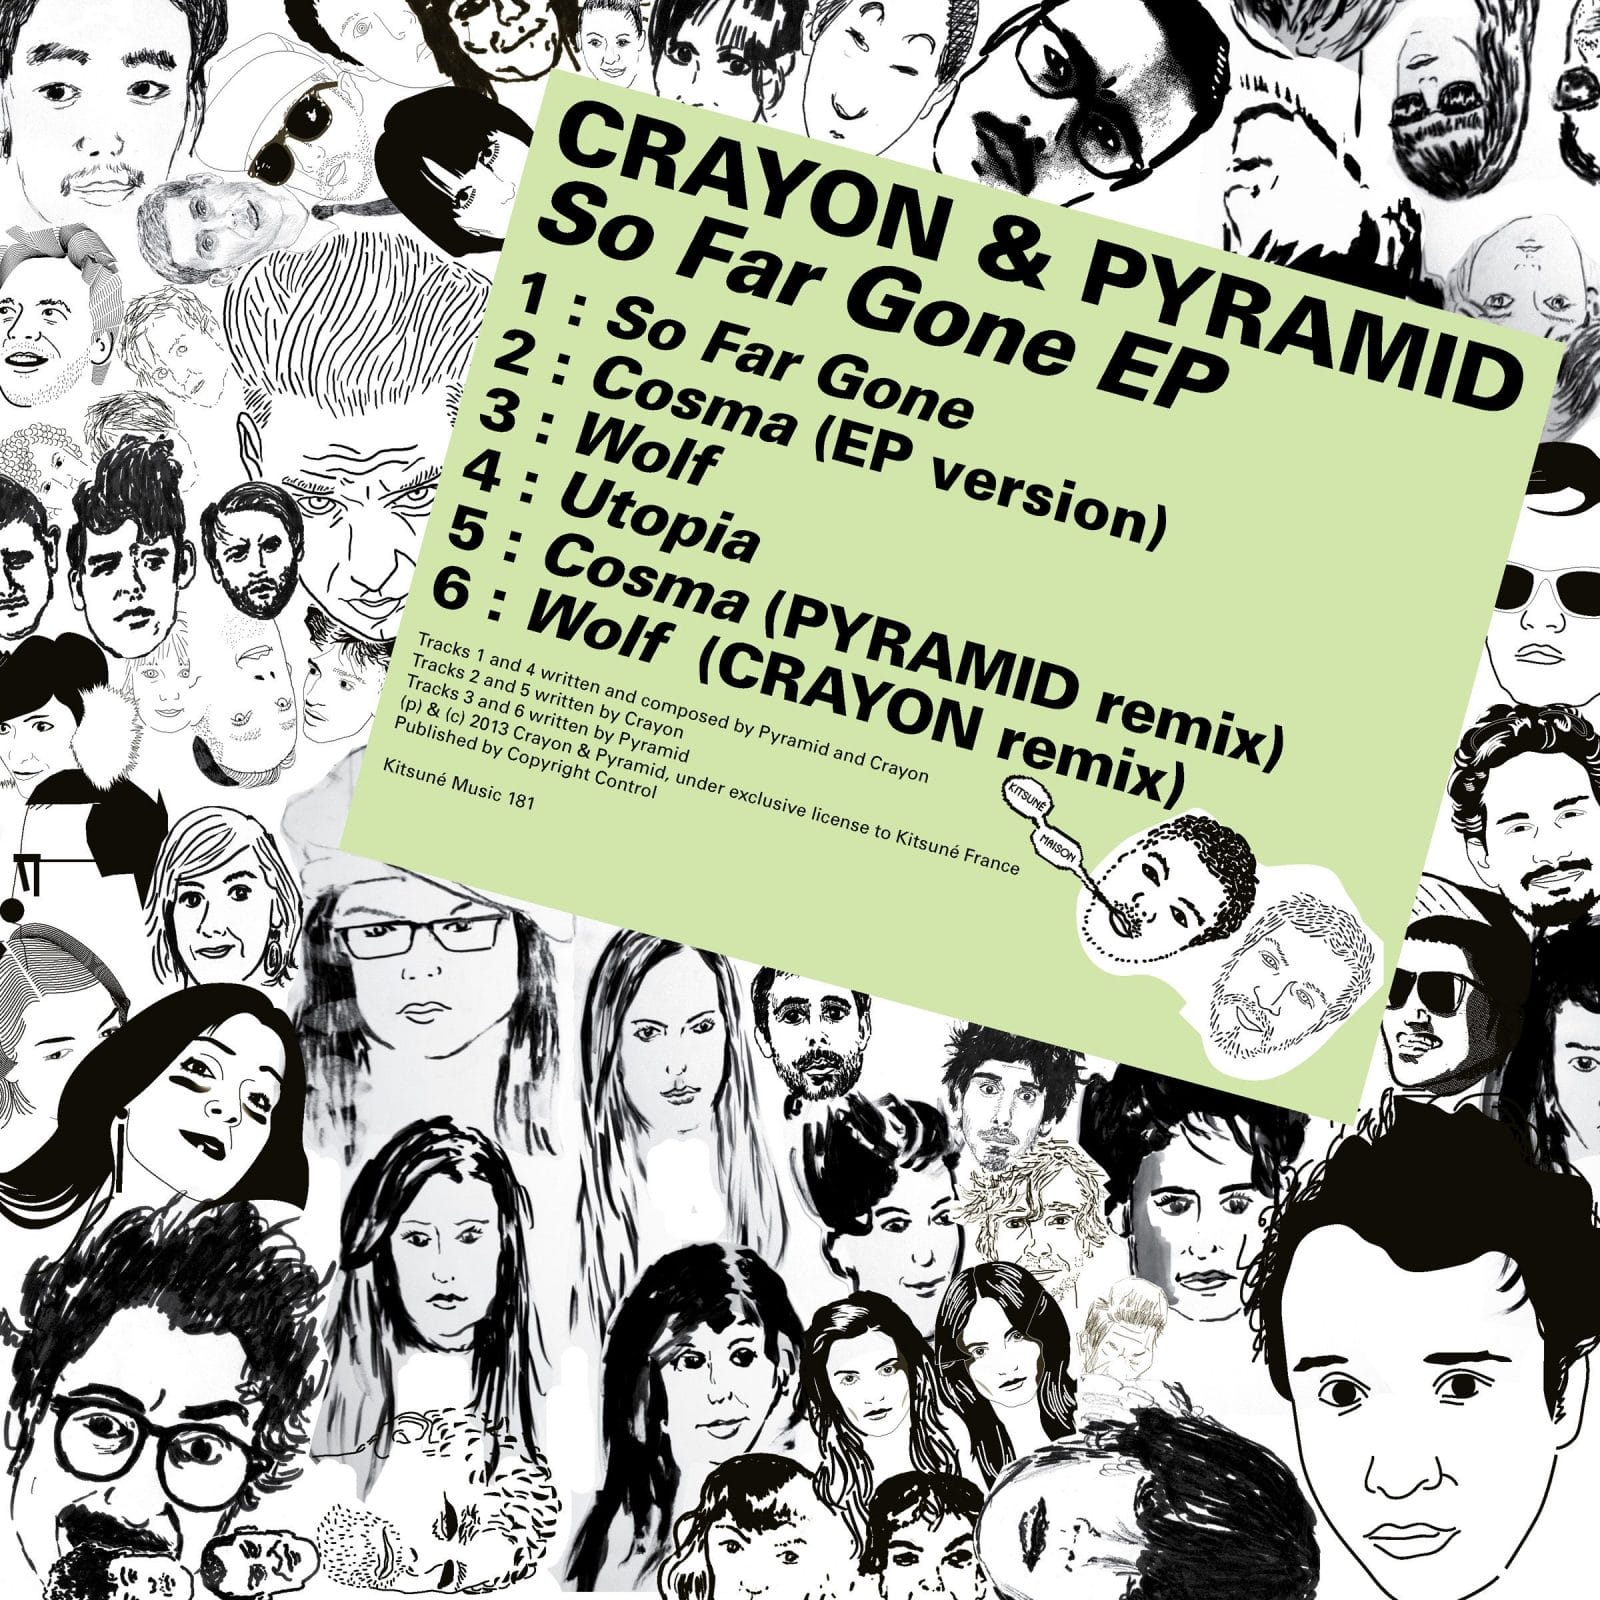 Le Crayon & Pyramid - So Far Gone EP 3